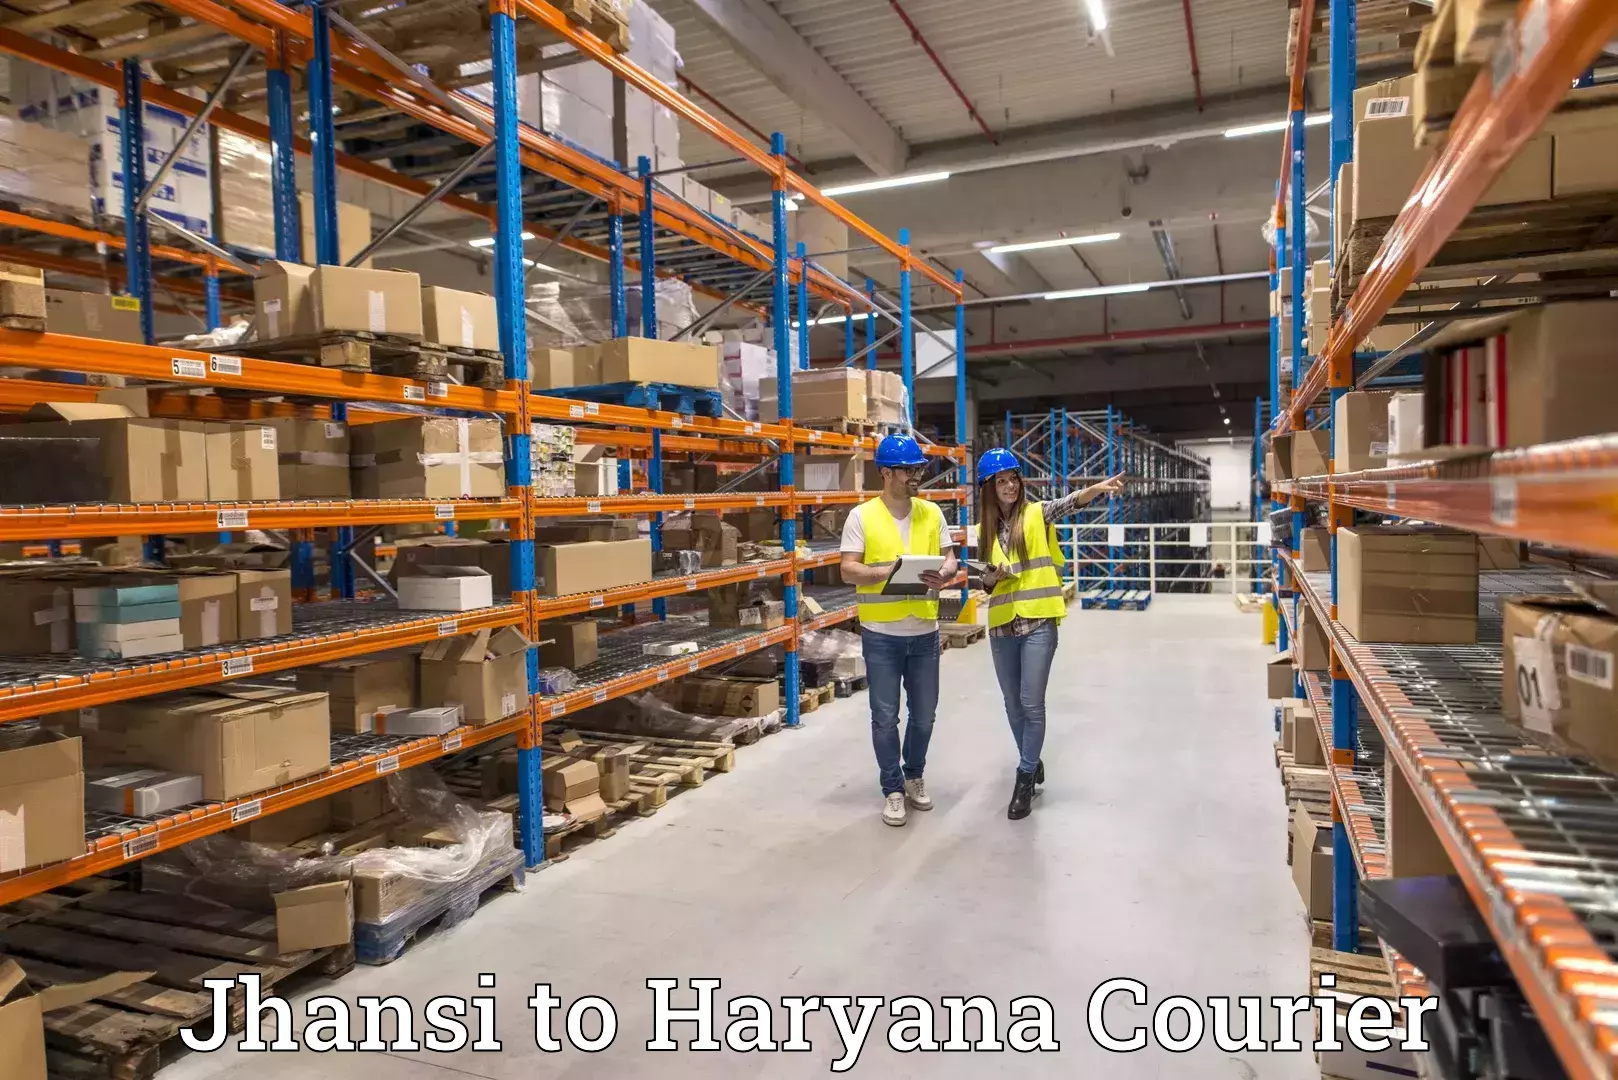 Logistics and distribution Jhansi to Chaudhary Charan Singh Haryana Agricultural University Hisar